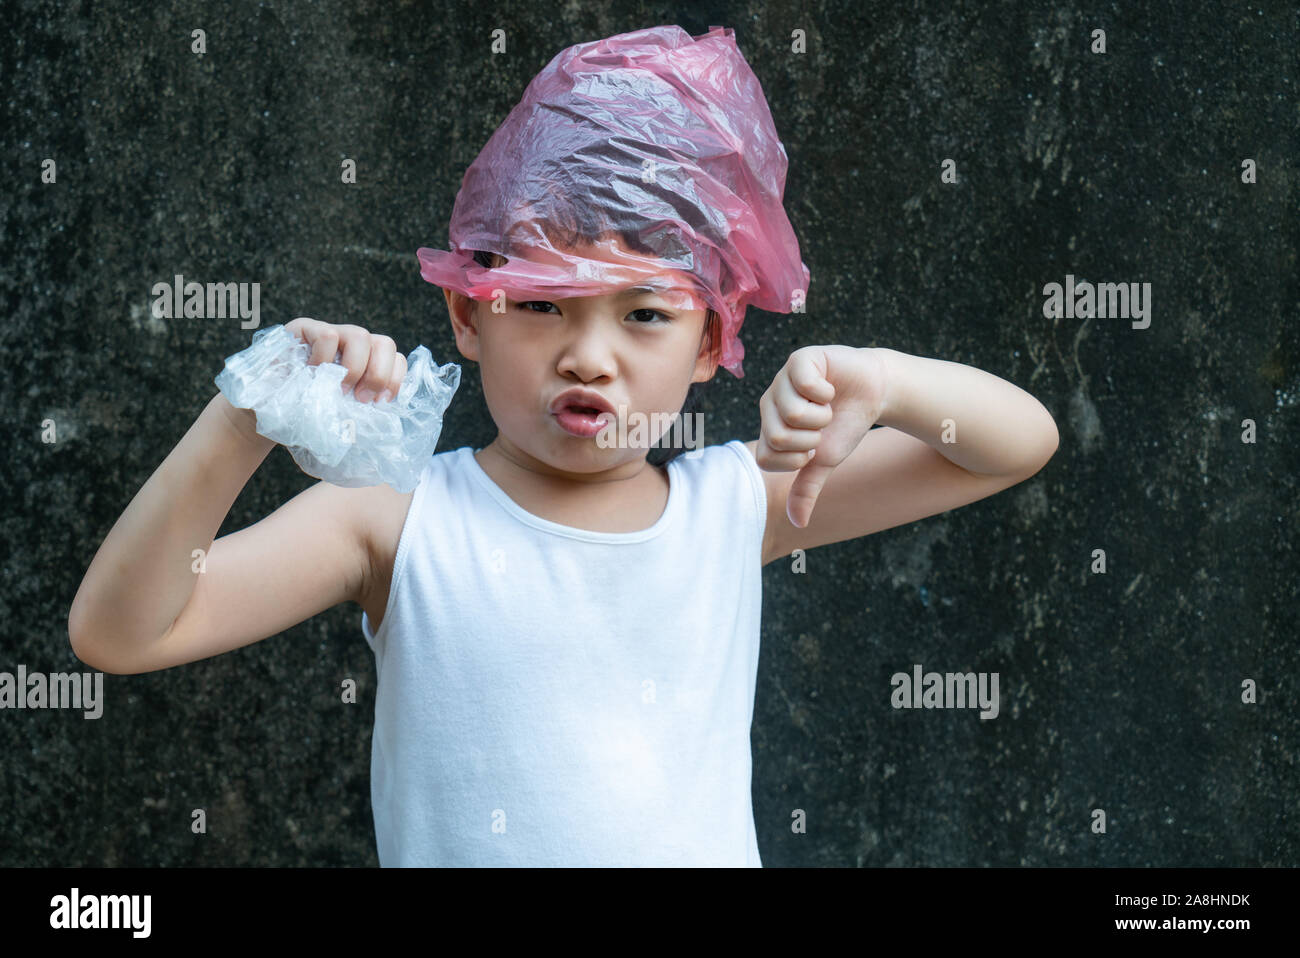 Niedliche kind Girl posiert mit Plastiktüten. Kunststoff ist auf ihrem Kopf. Konzept für die Anwendung von Plastikbeutel. Stockfoto